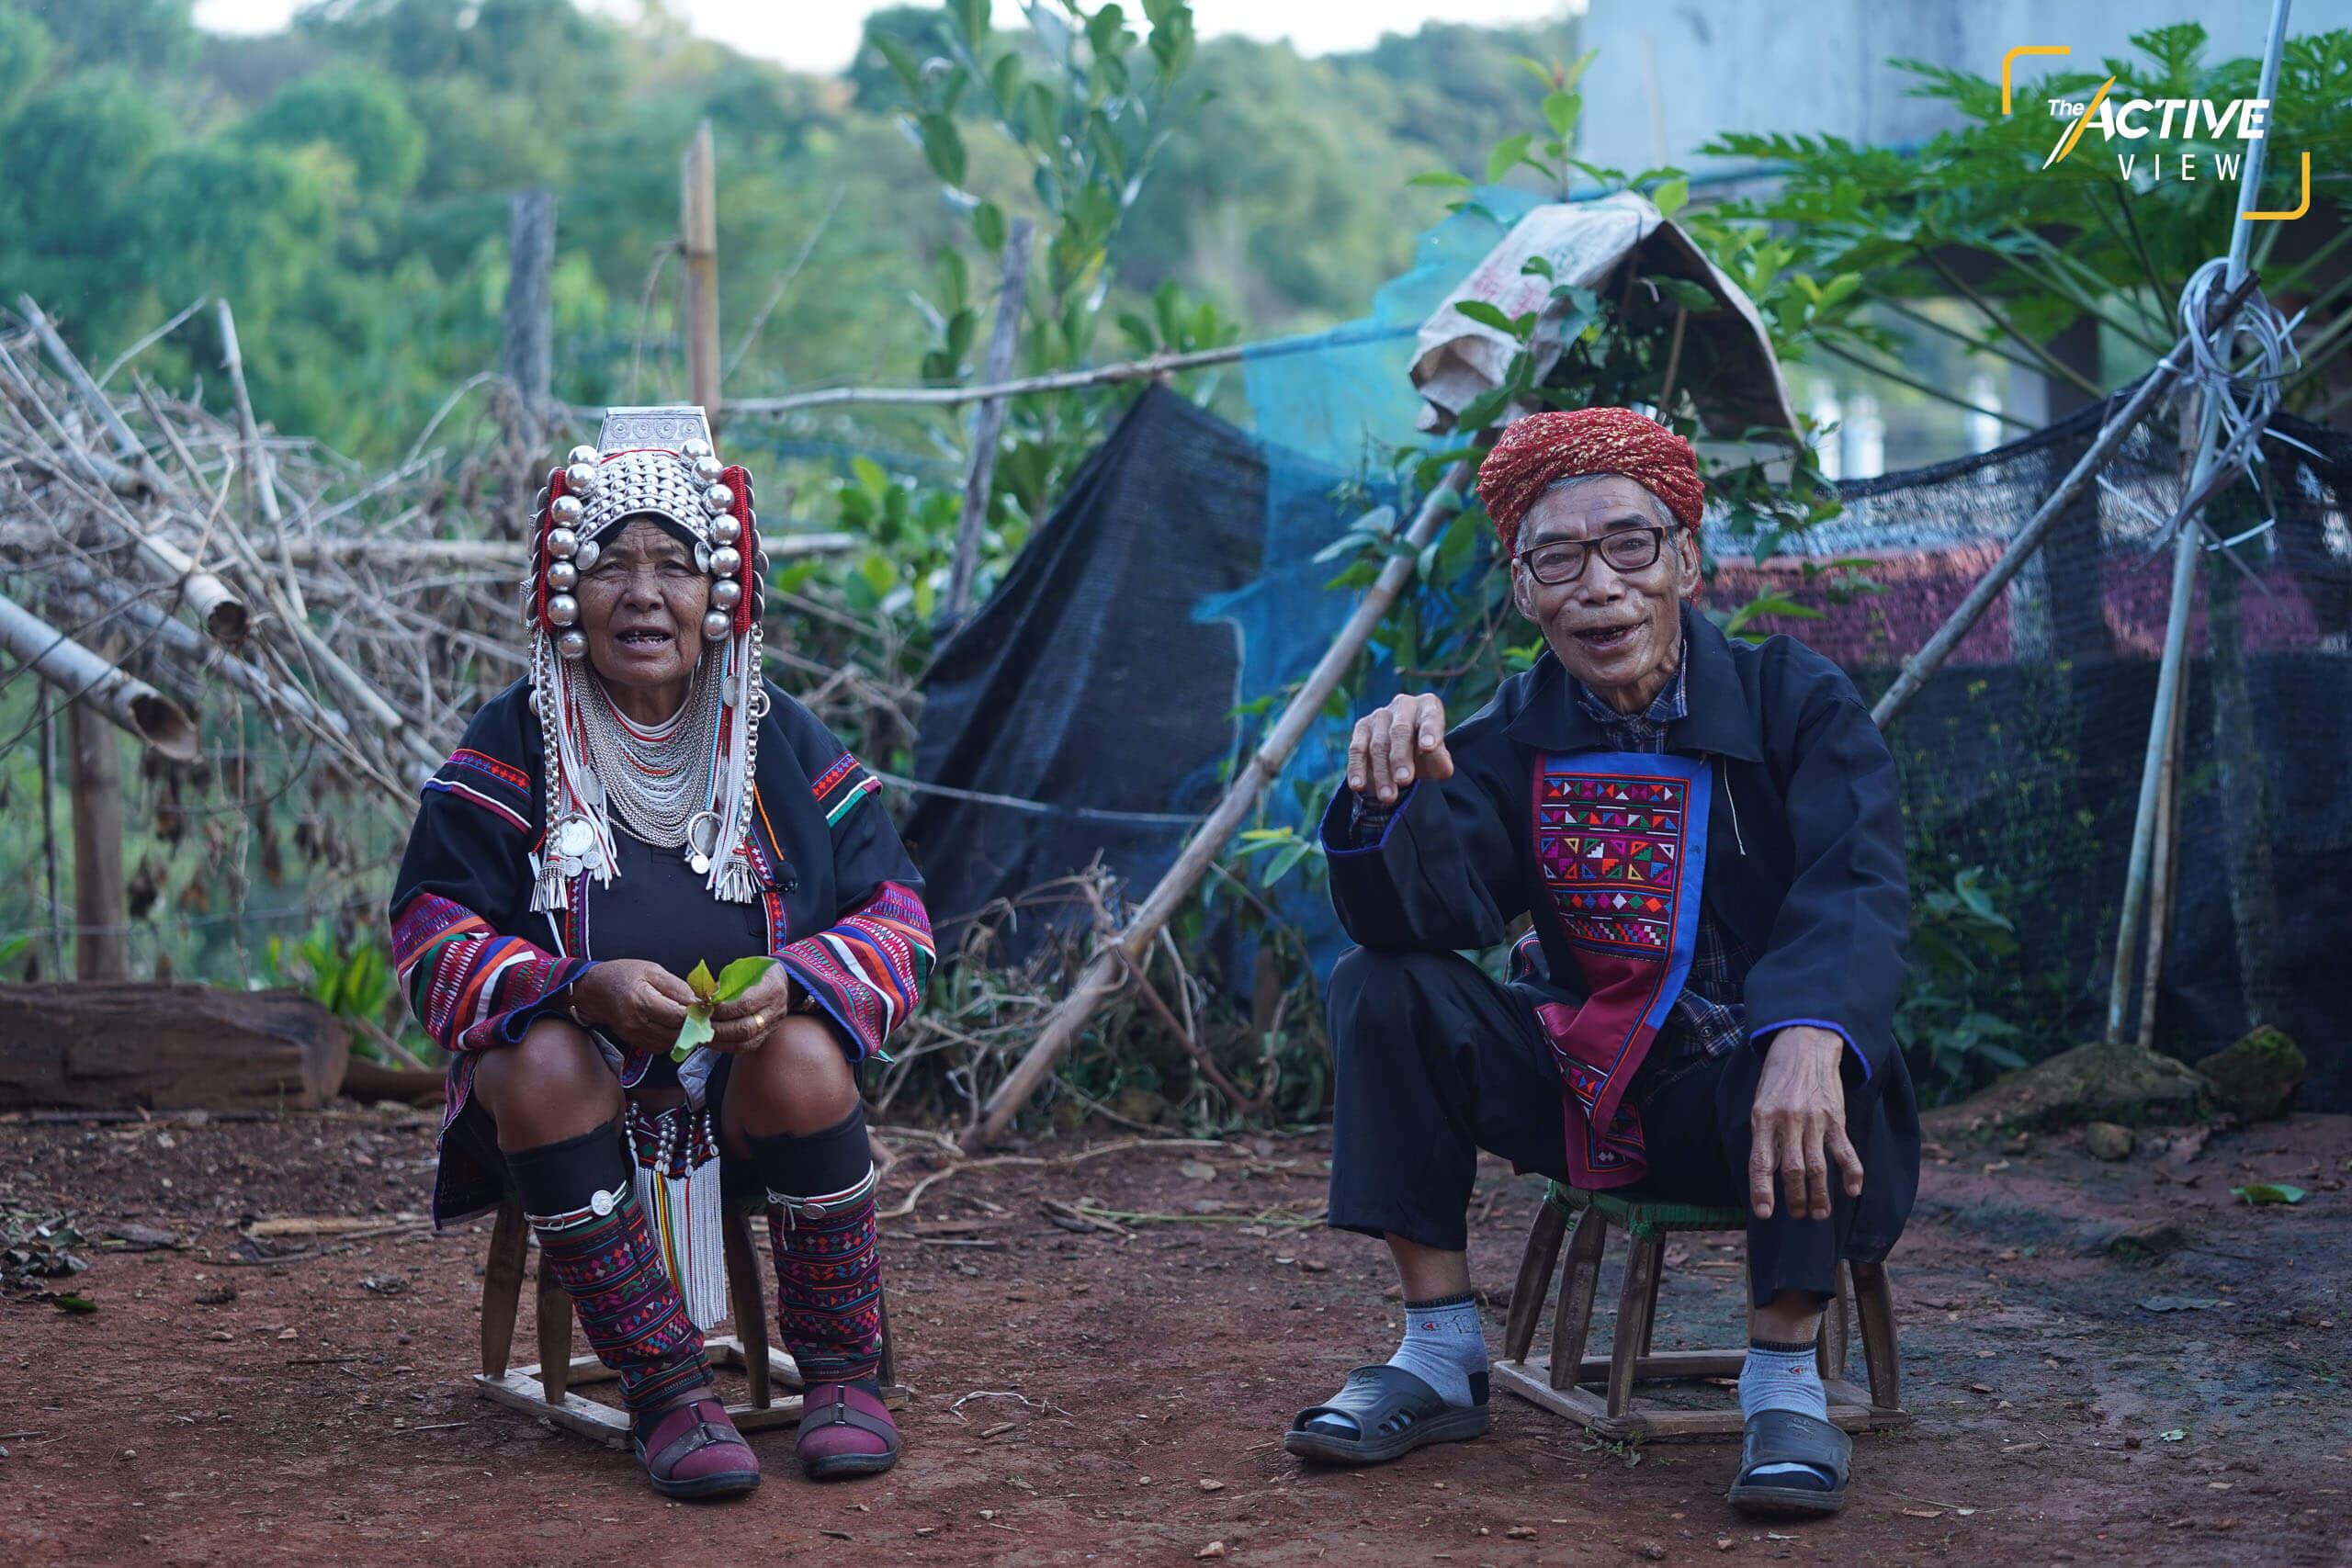 “บูเหม่ หม่อปอกู่” และ “อาเท่อ หม่อปอกู่” สองสามีภรรยาชาติพันธุ์อาข่าในวัย 77 และ 79 ปีเพิ่งได้ทำบัตรประชาชนเป็นคนไทยเต็มขั้น พวกเขาเป็นชนกลุ่มน้อยที่อพยพมาจากเชียงตุง ก่อนมาลงหลักปักฐานที่หมู่บ้านป่าคาสุขใจ ต.แม่สลองนอก อ.แม่ฟ้าหลวง จ.เชียงราย มาเป็นเวลากว่า 50 ปี ลูกหลานของพวกเขามีสัญชาติไทยกันหมดแล้ว ขณะที่การขอสัญชาติของคนทั้งคู่ ต้องใช้เวลายาวนานจนเพื่อนในวัยเดียวกันเสียชีวิตไปก่อน ไม่ทันได้ทำบัตรประชาชน เป็นคนไทยสมบูรณ์แบบ 